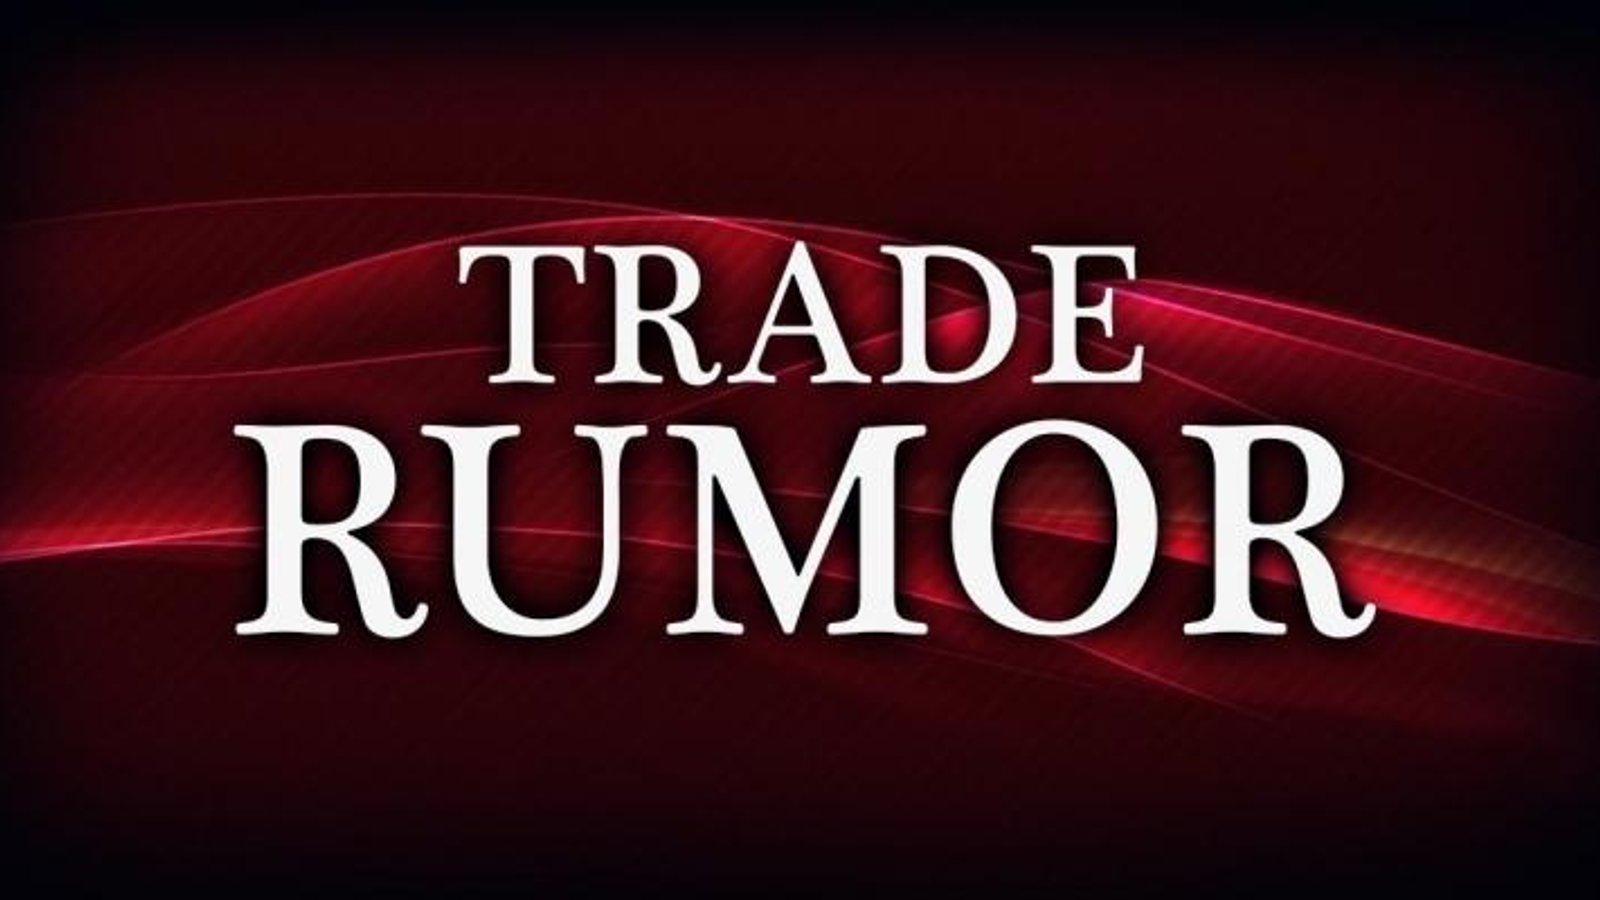 Rumor: Several teams involved in major trade rumor.